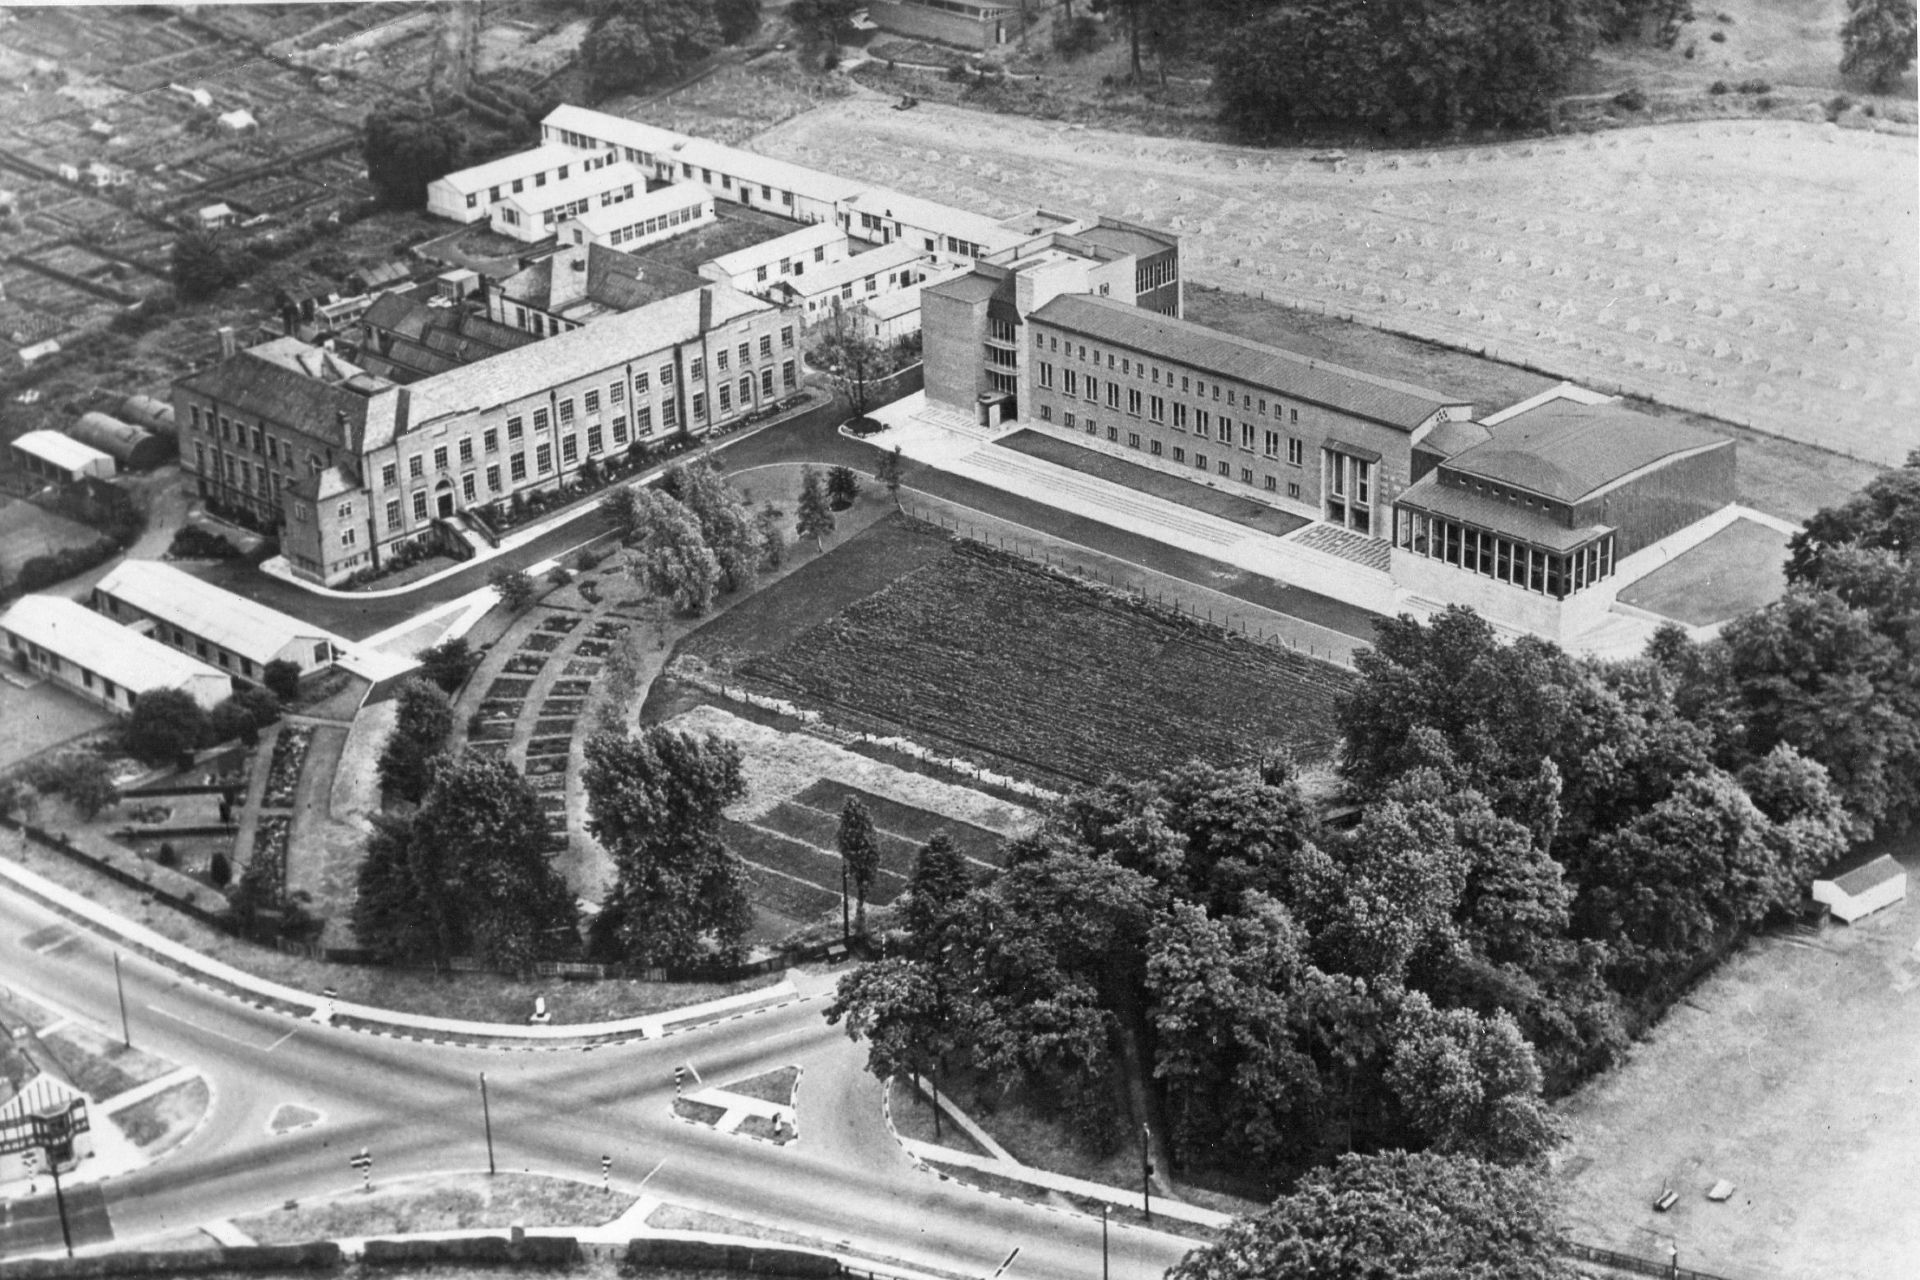 Circa 1960, the first Botanic Garden